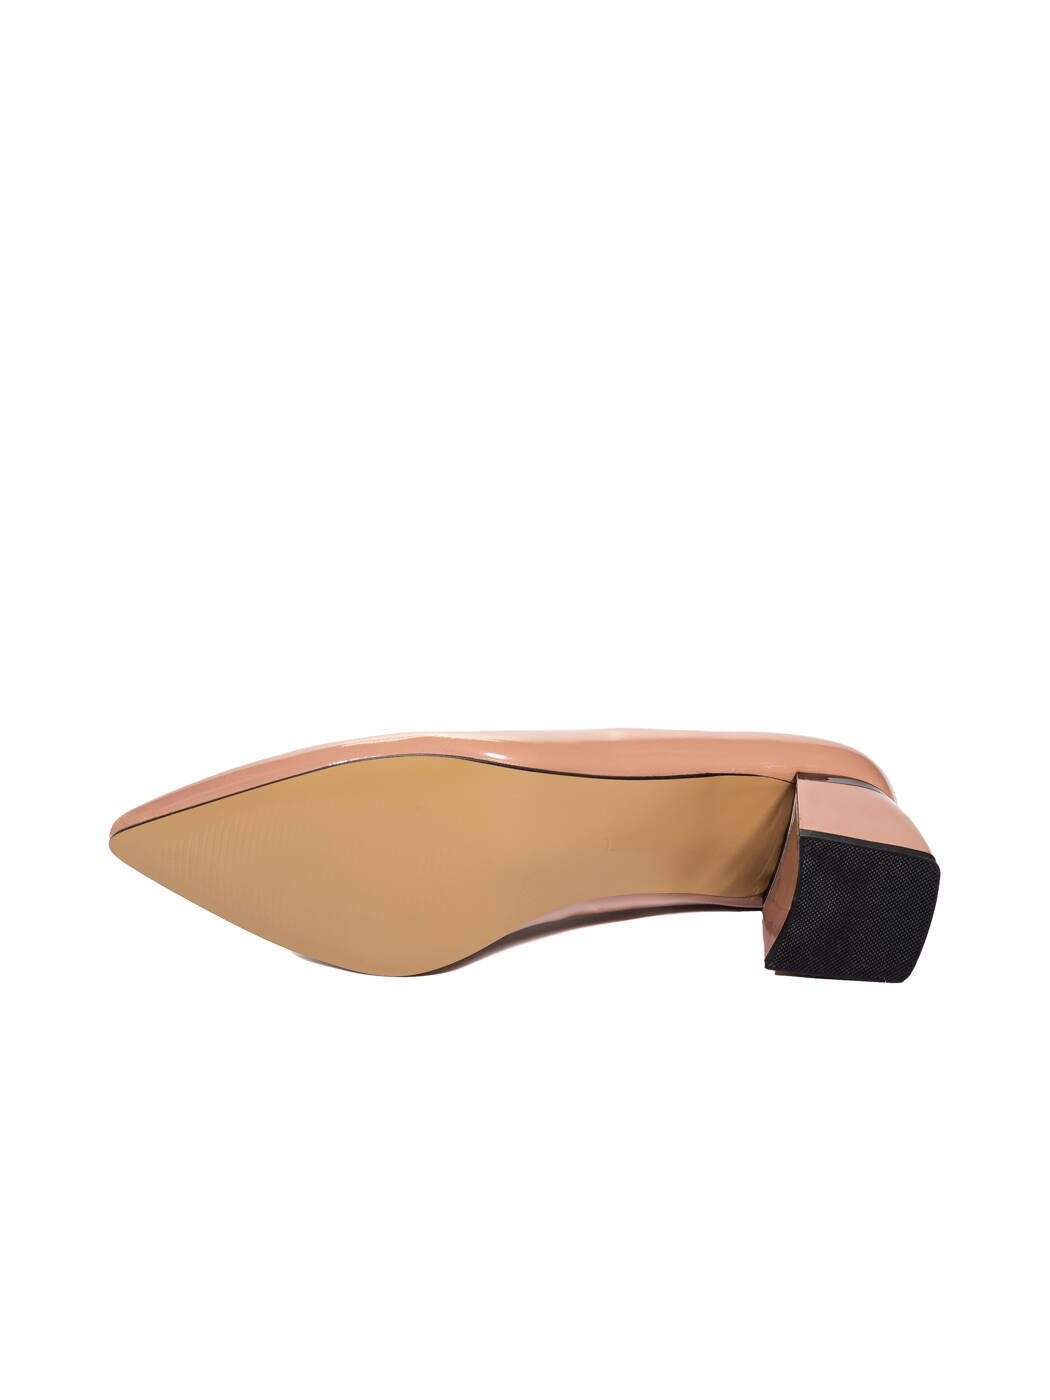 Туфли женские коричневые искусственный лак каблук устойчивый демисезон от производителя 4M вид 2